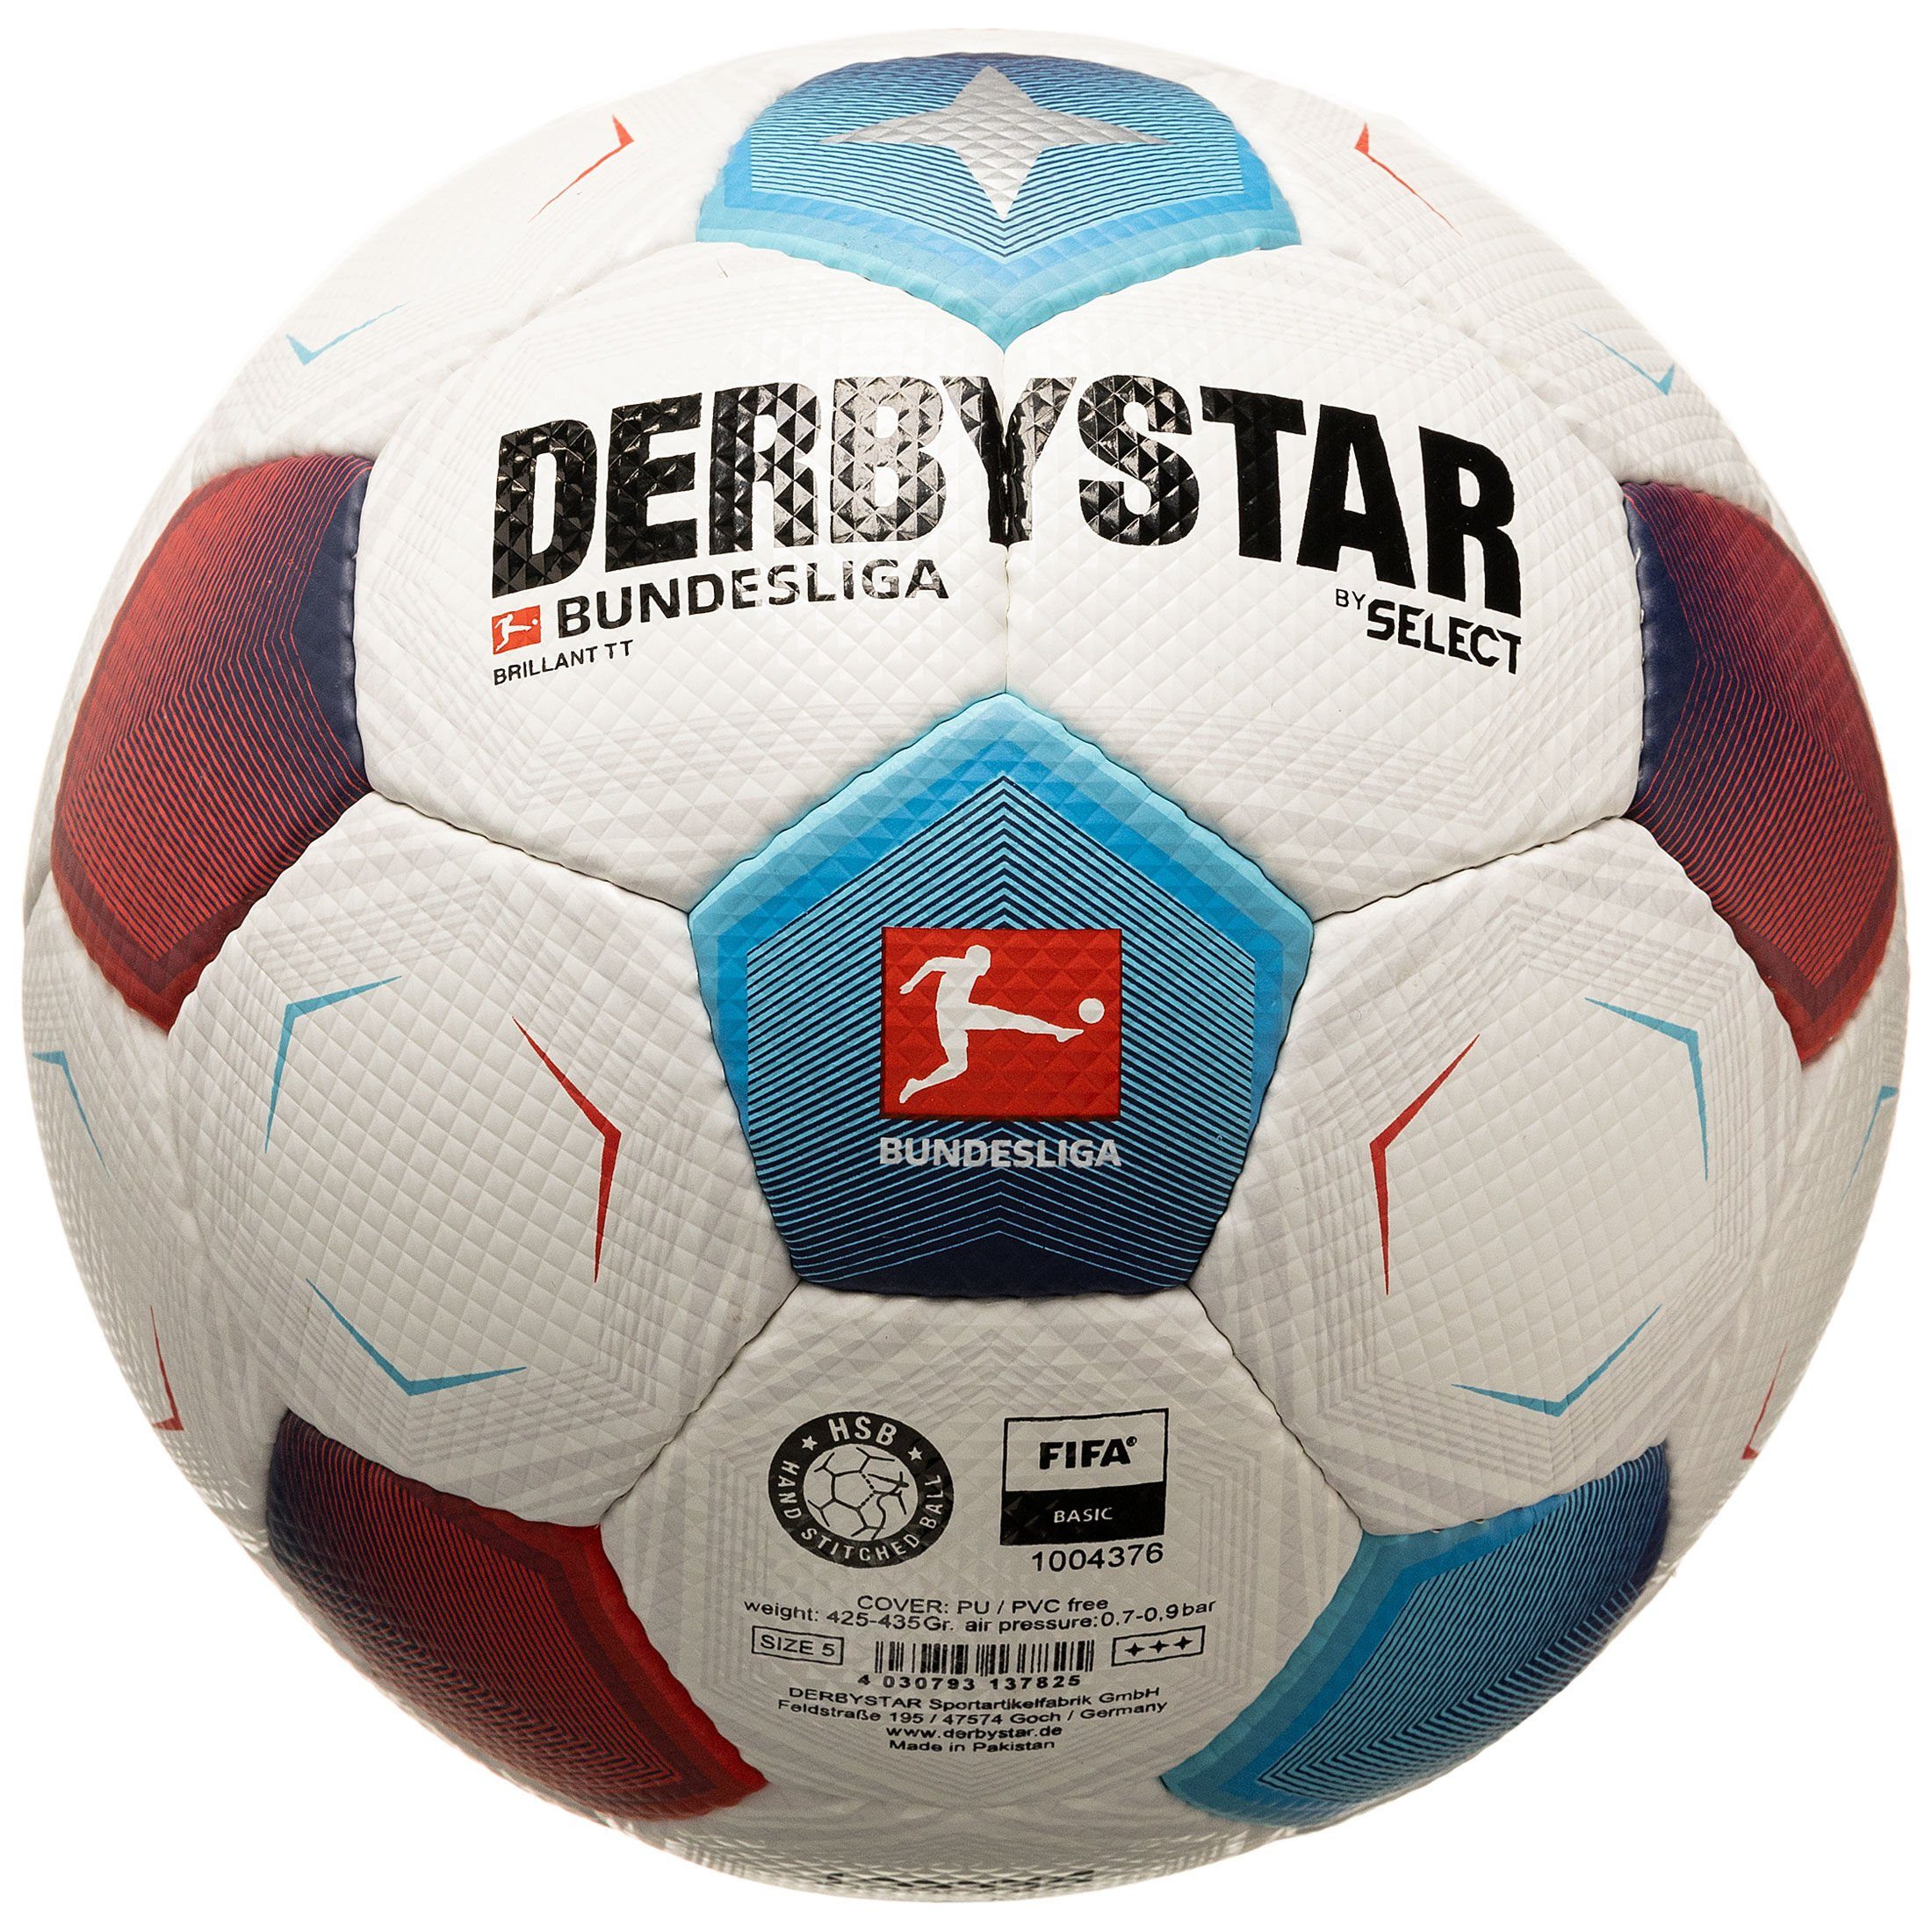 Derbystar Fußball Bundesliga Bundesliga v23 TT Brillant Fußball